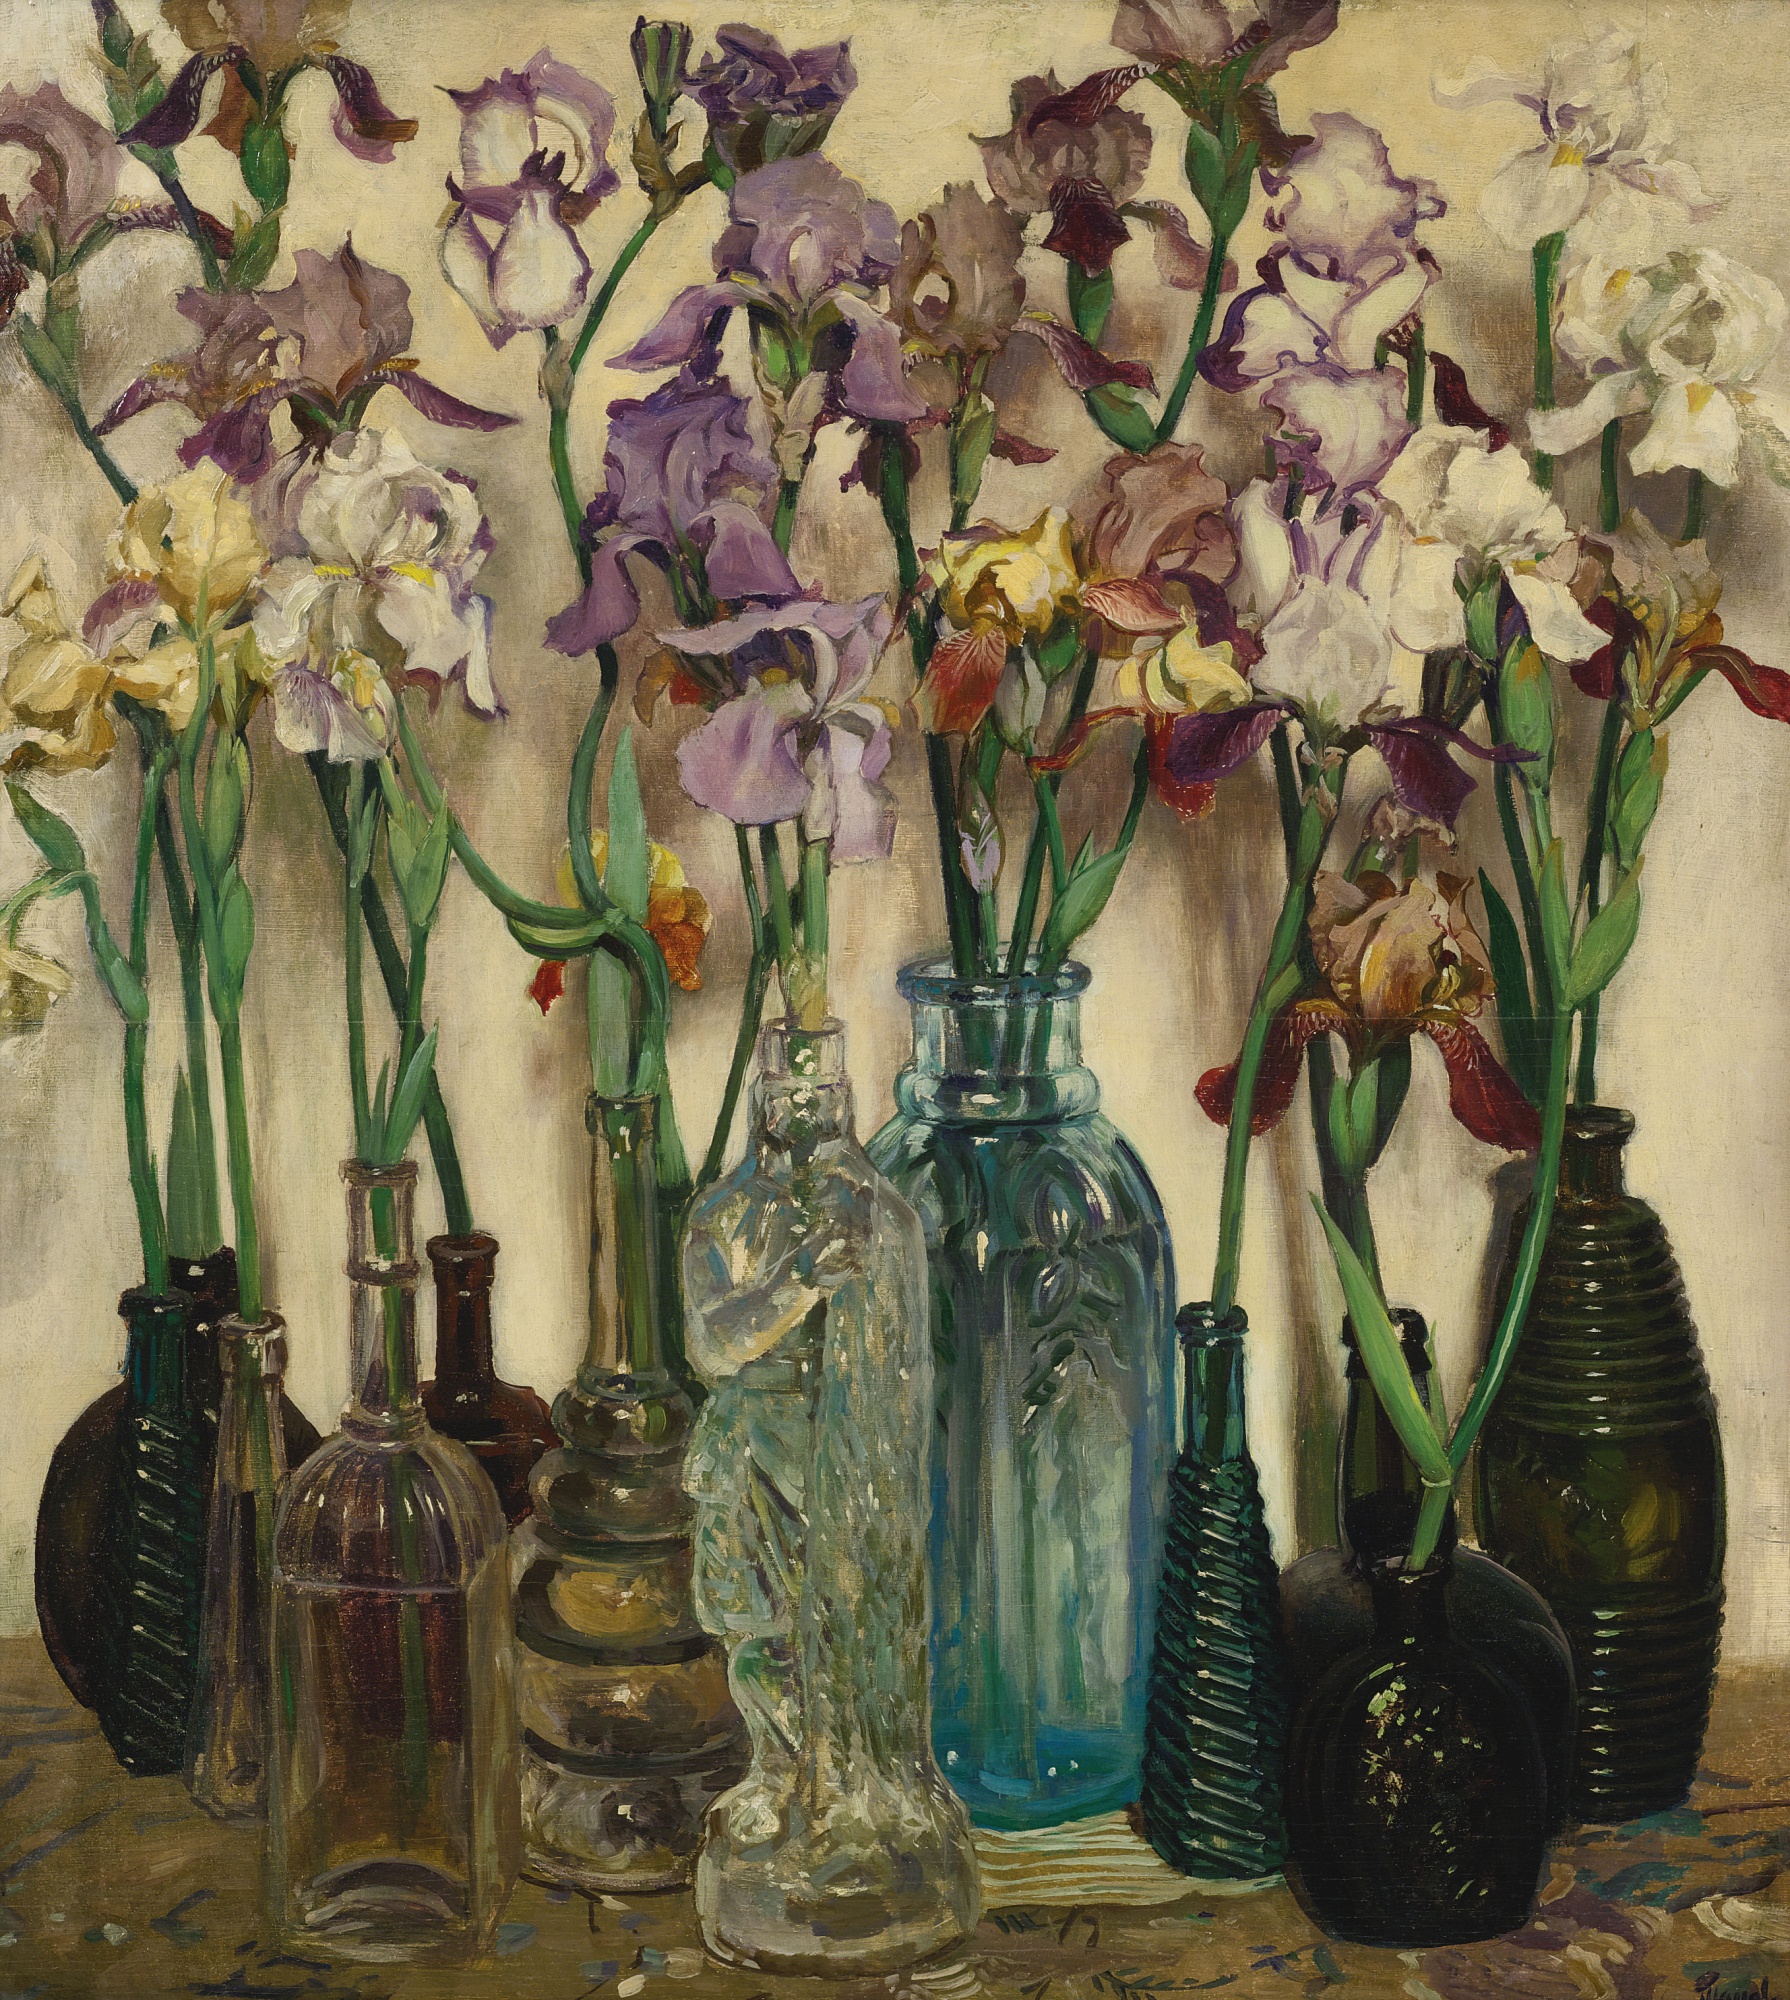 ラム・ロー by Frederick Judd Waugh - 1922年 - 82.2 x 73.7 cm 